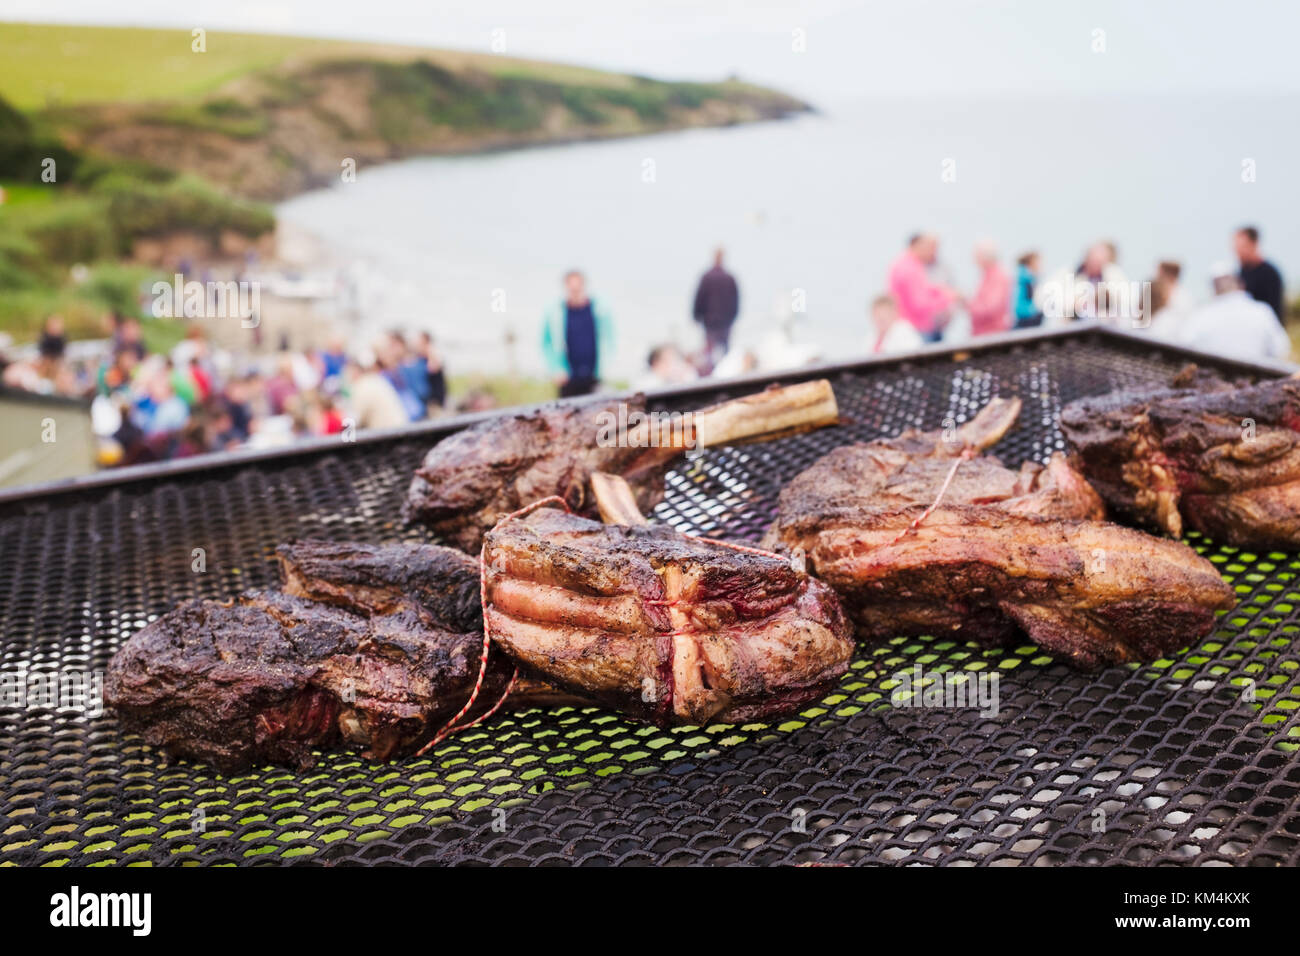 Un barbecue sulla spiaggia con la cottura della carne su un fuoco aperto. persone in background sulla scogliera che si affaccia sulla costa. Foto Stock